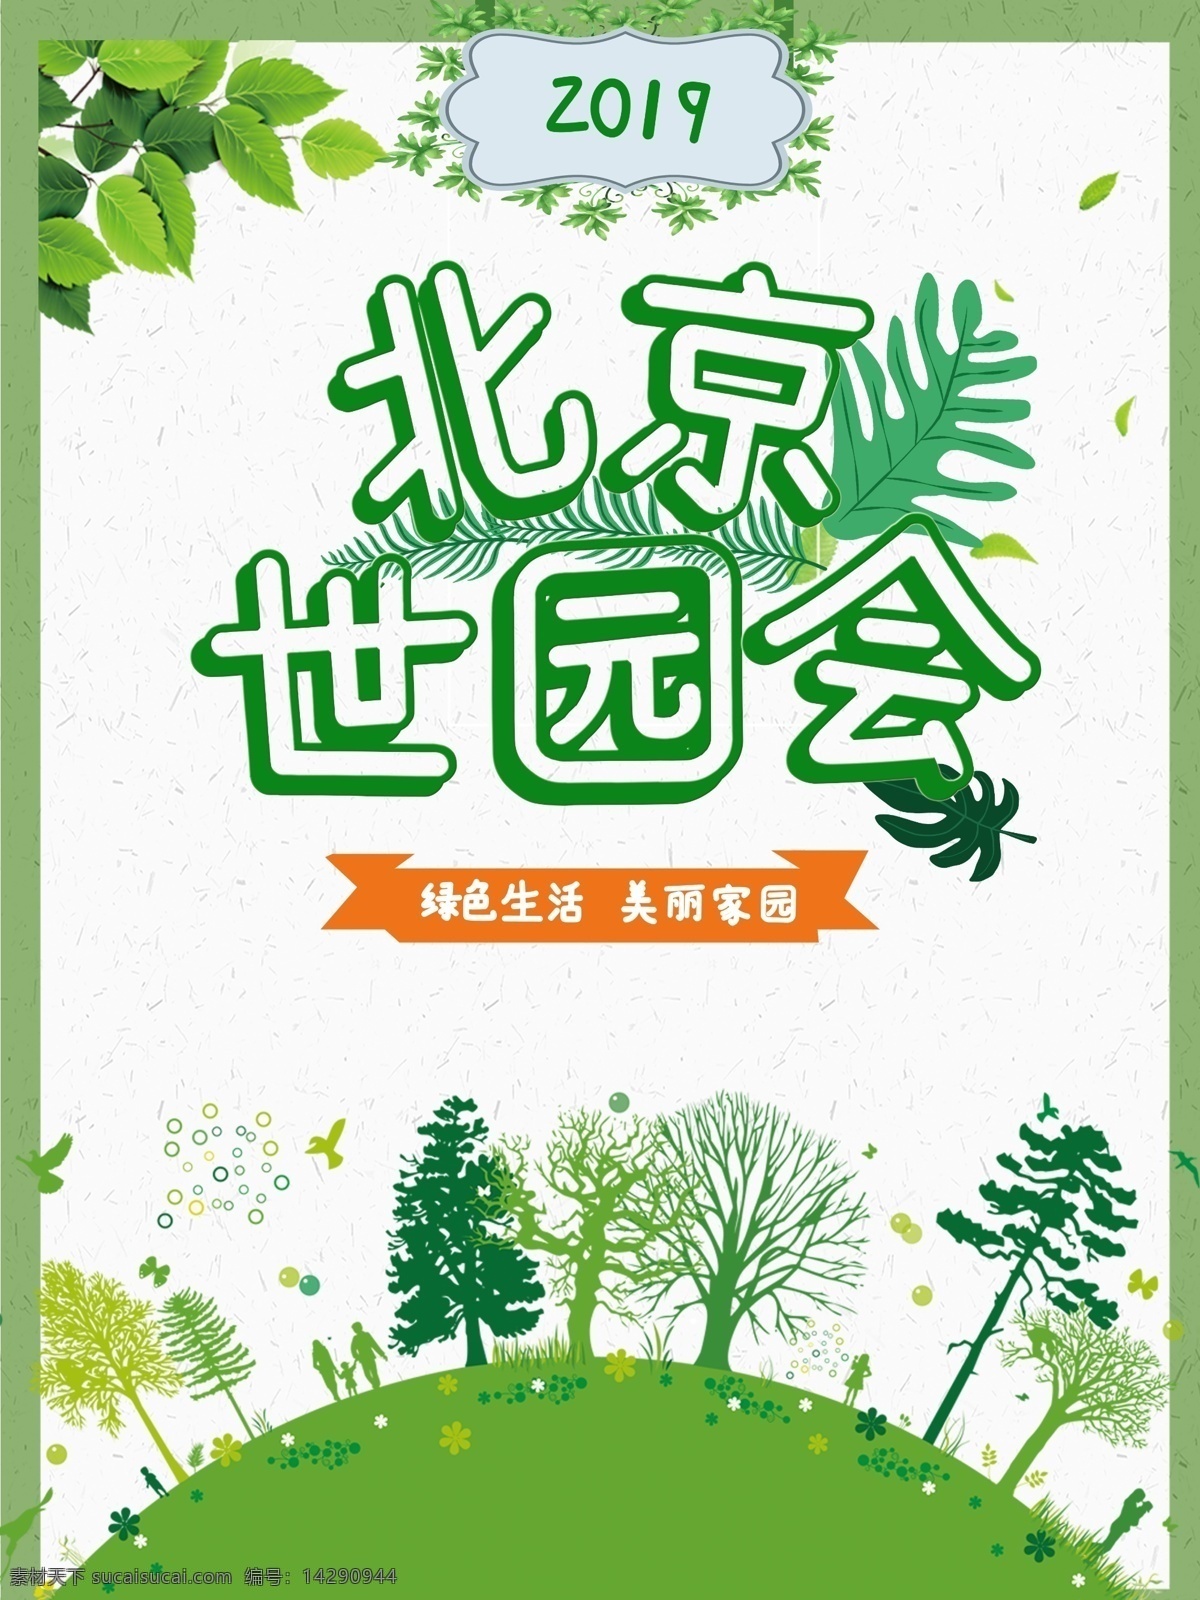 北京 世 园 会 2019 绿色 小清 新海 报